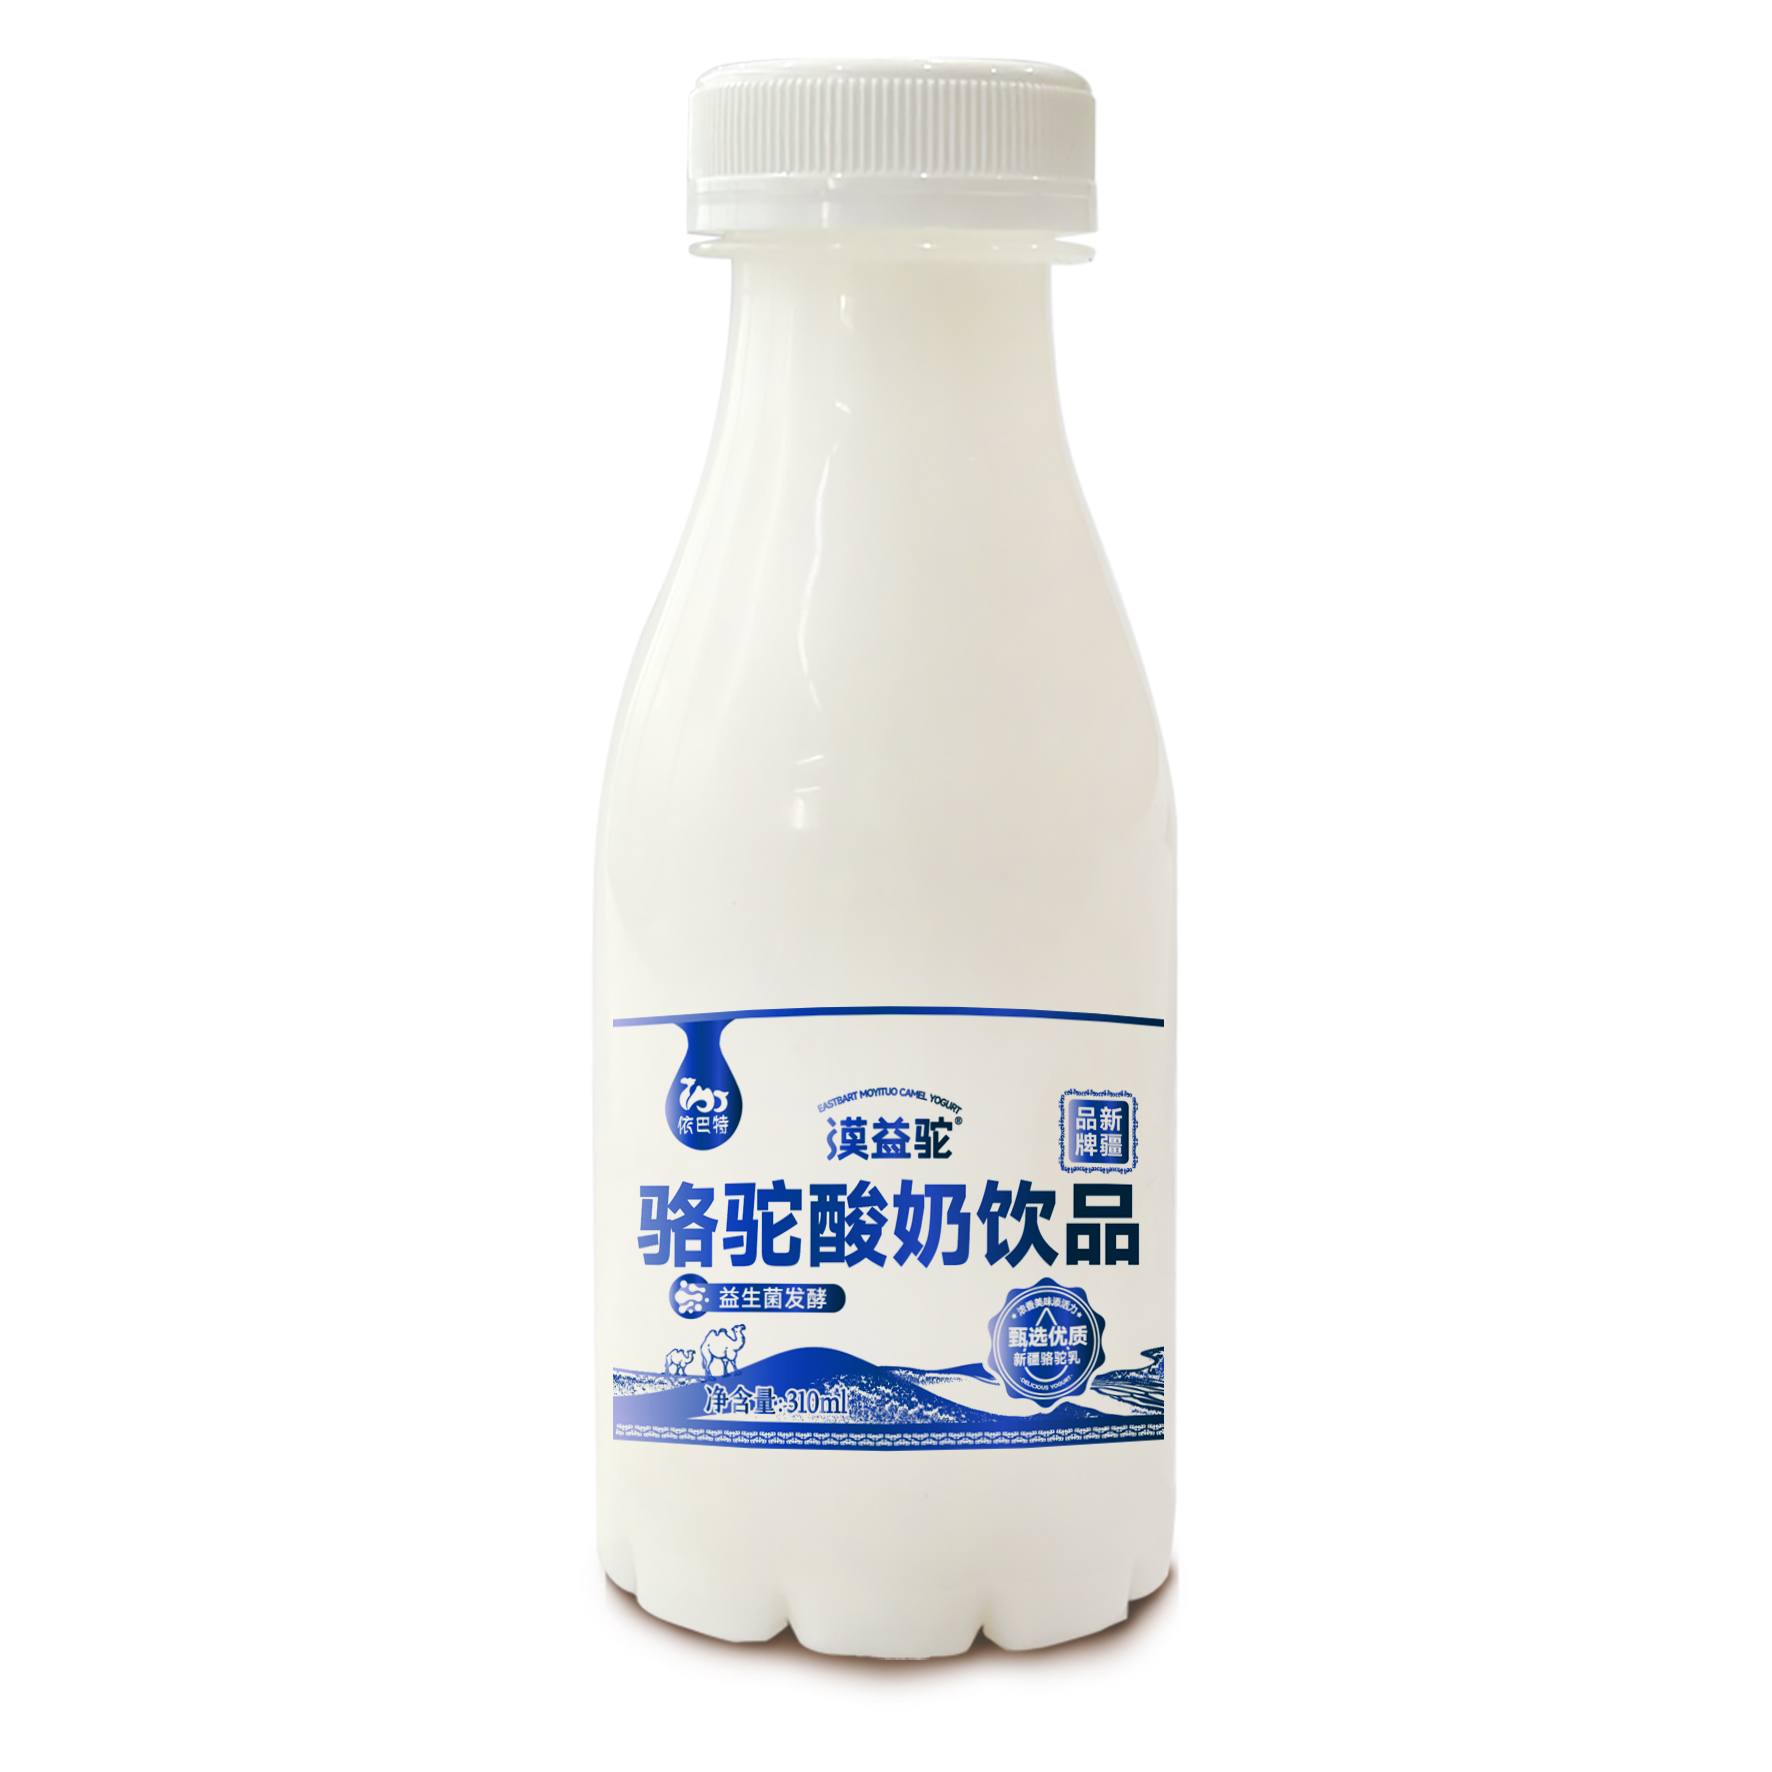 依巴特漠益駝駱駝酸奶批發-液態奶現貨供應-駝酸奶駱駝奶